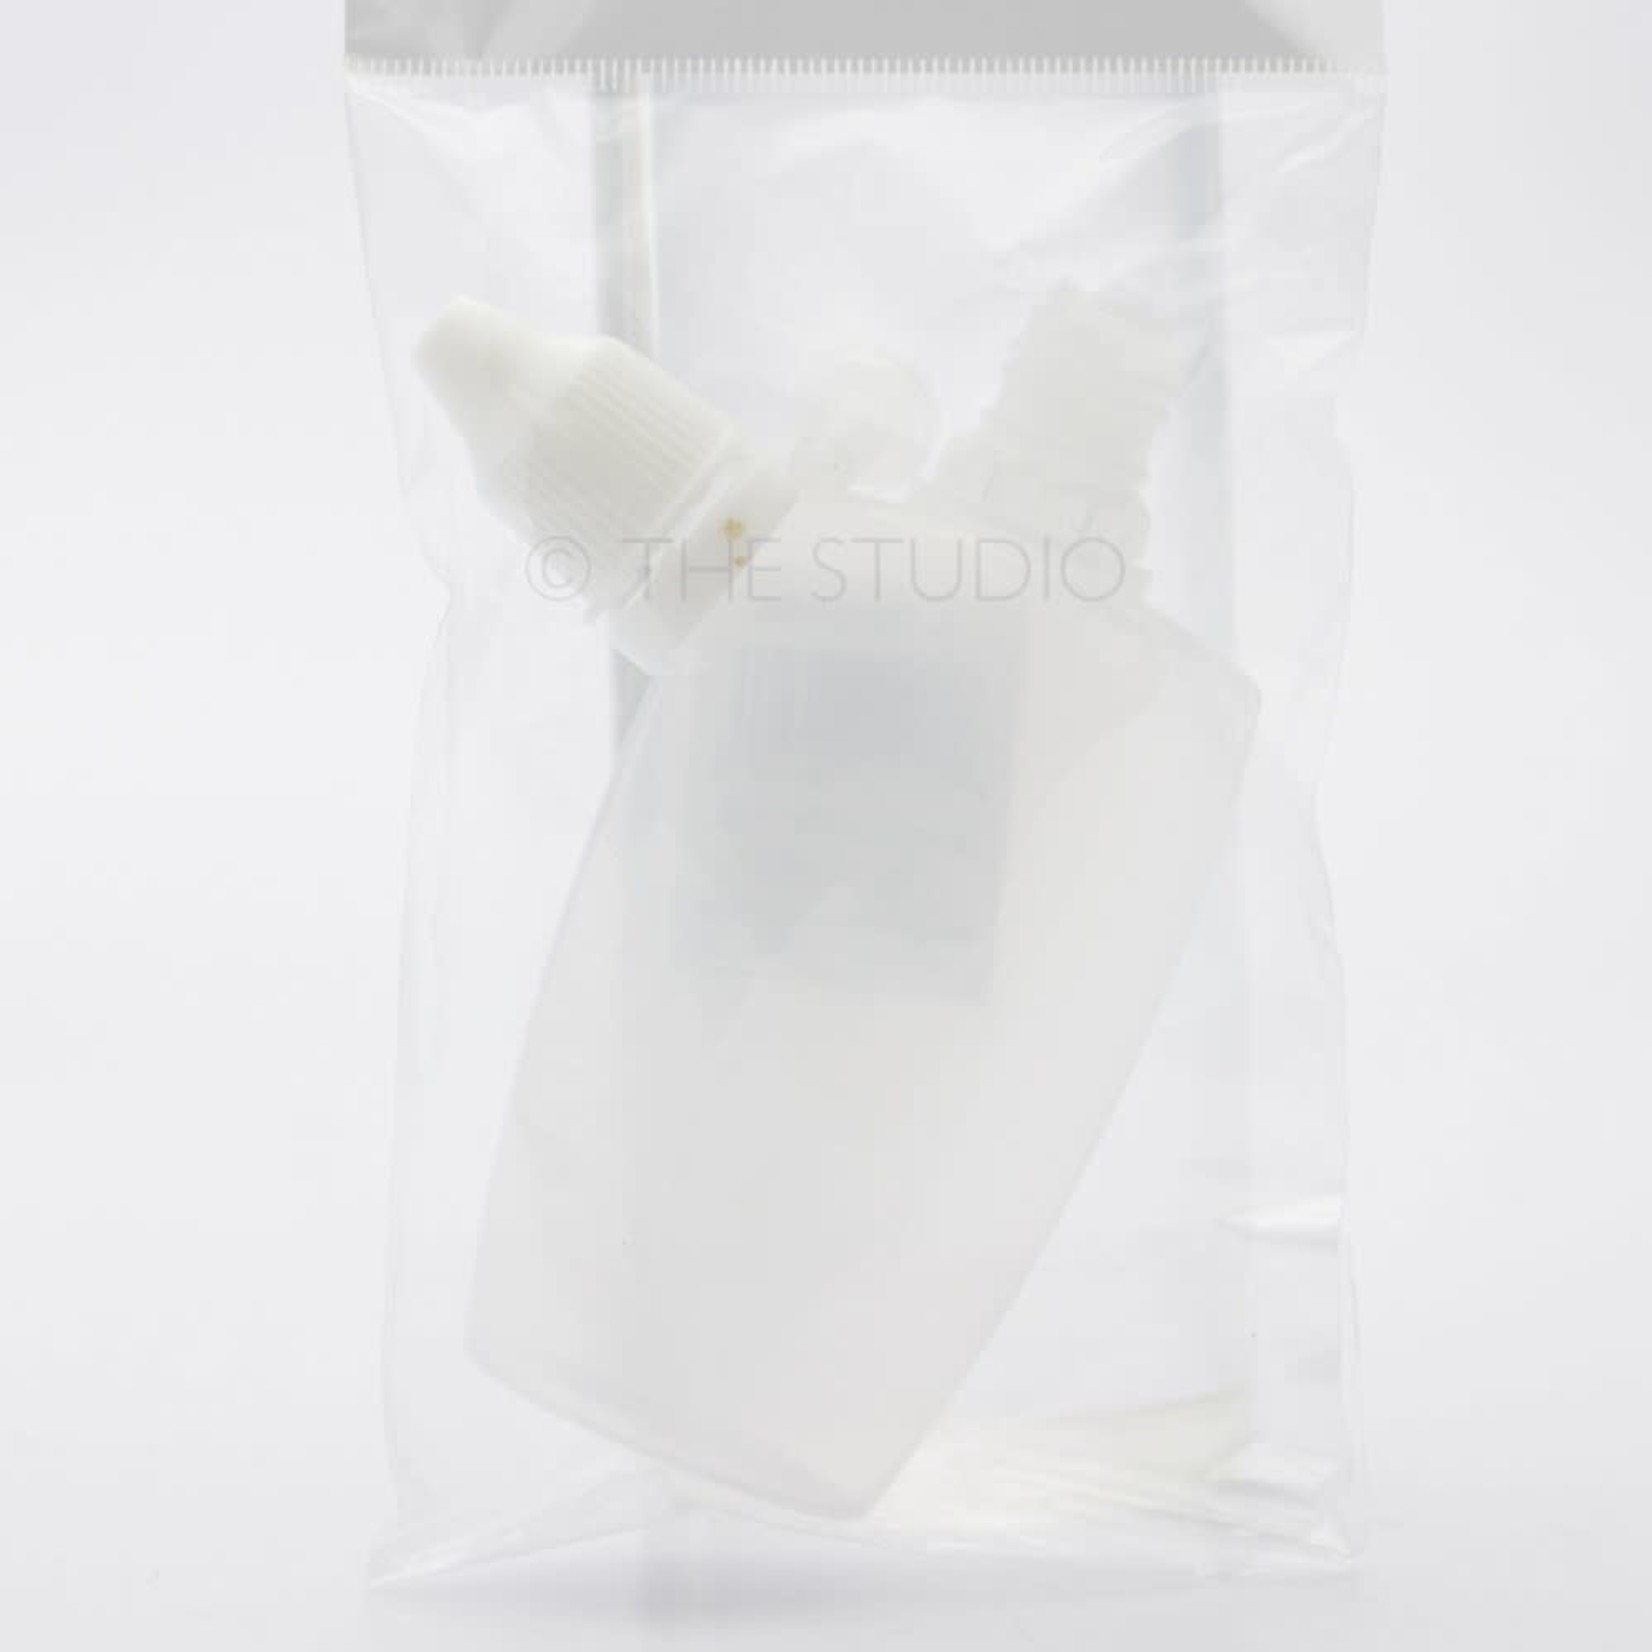 DL - Dropper Bottle - Plastic - 1 oz - DL C457